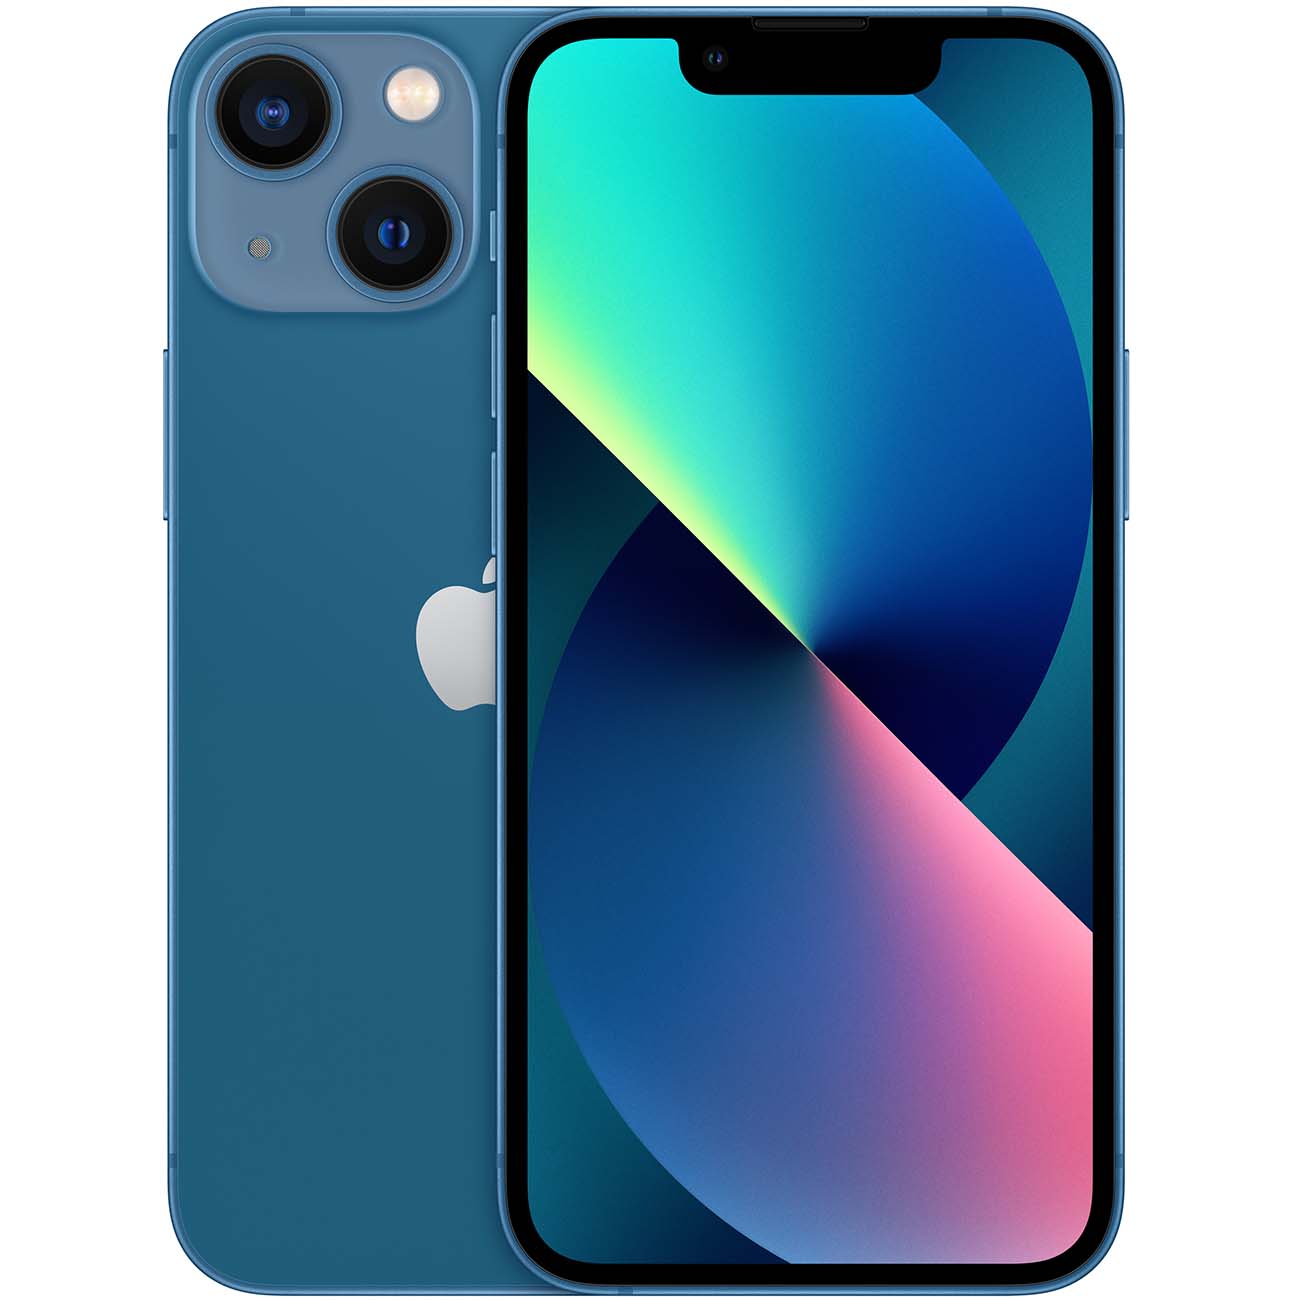 Купить смартфон apple iphone 13 mini 512gb blue Apple iPhone 13 mini в официальном магазине Apple, Samsung, Xiaomi. iPixel.ru Купить, заказ, кредит, рассрочка, отзывы,  характеристики, цена,  фотографии, в подарок.